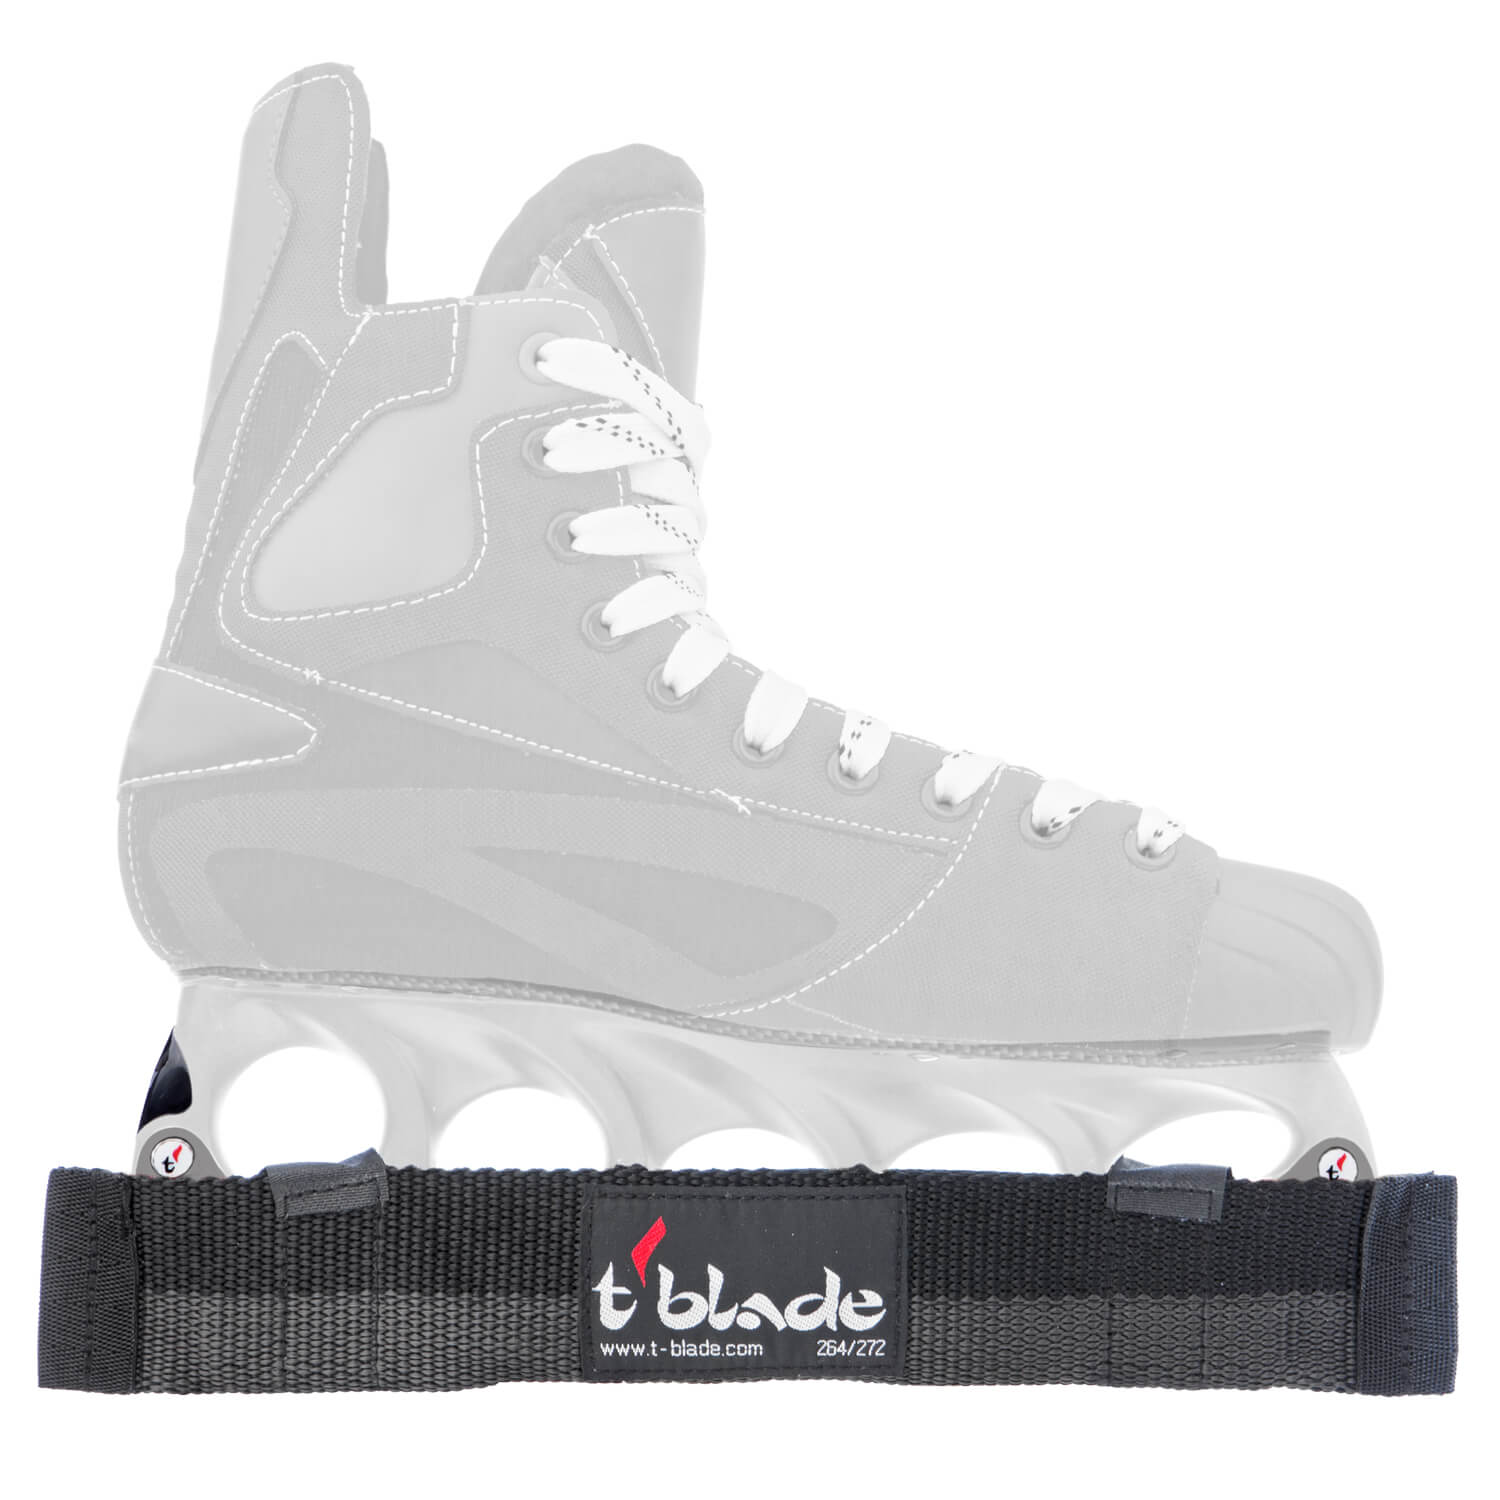 264 schwarz t blade t-blade Stabilisator für Eishockey Skates mit Schlüssel 